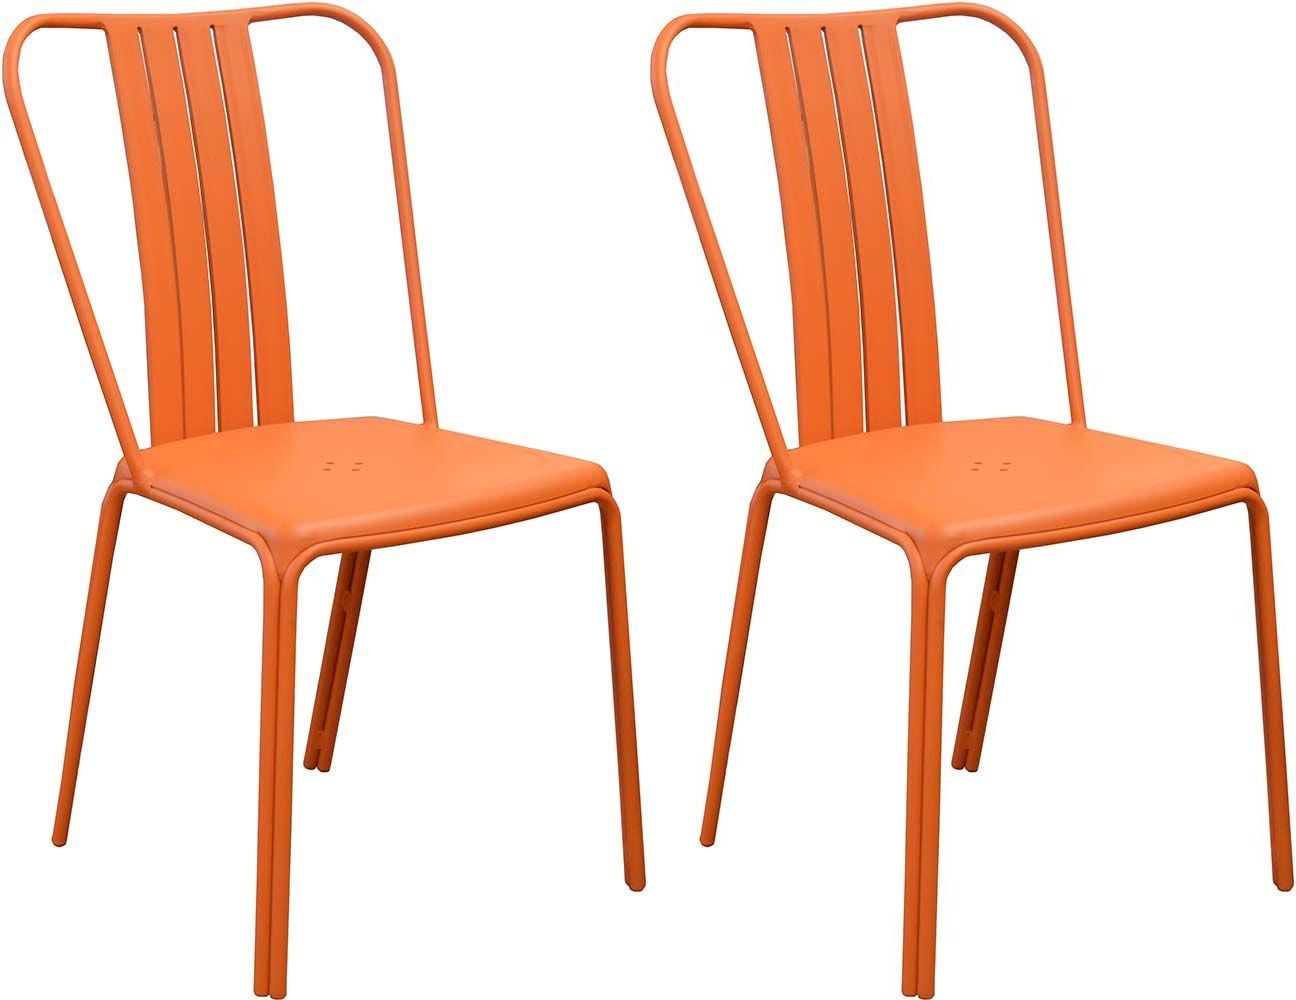 chaise-de-jardin-aluminium-orange